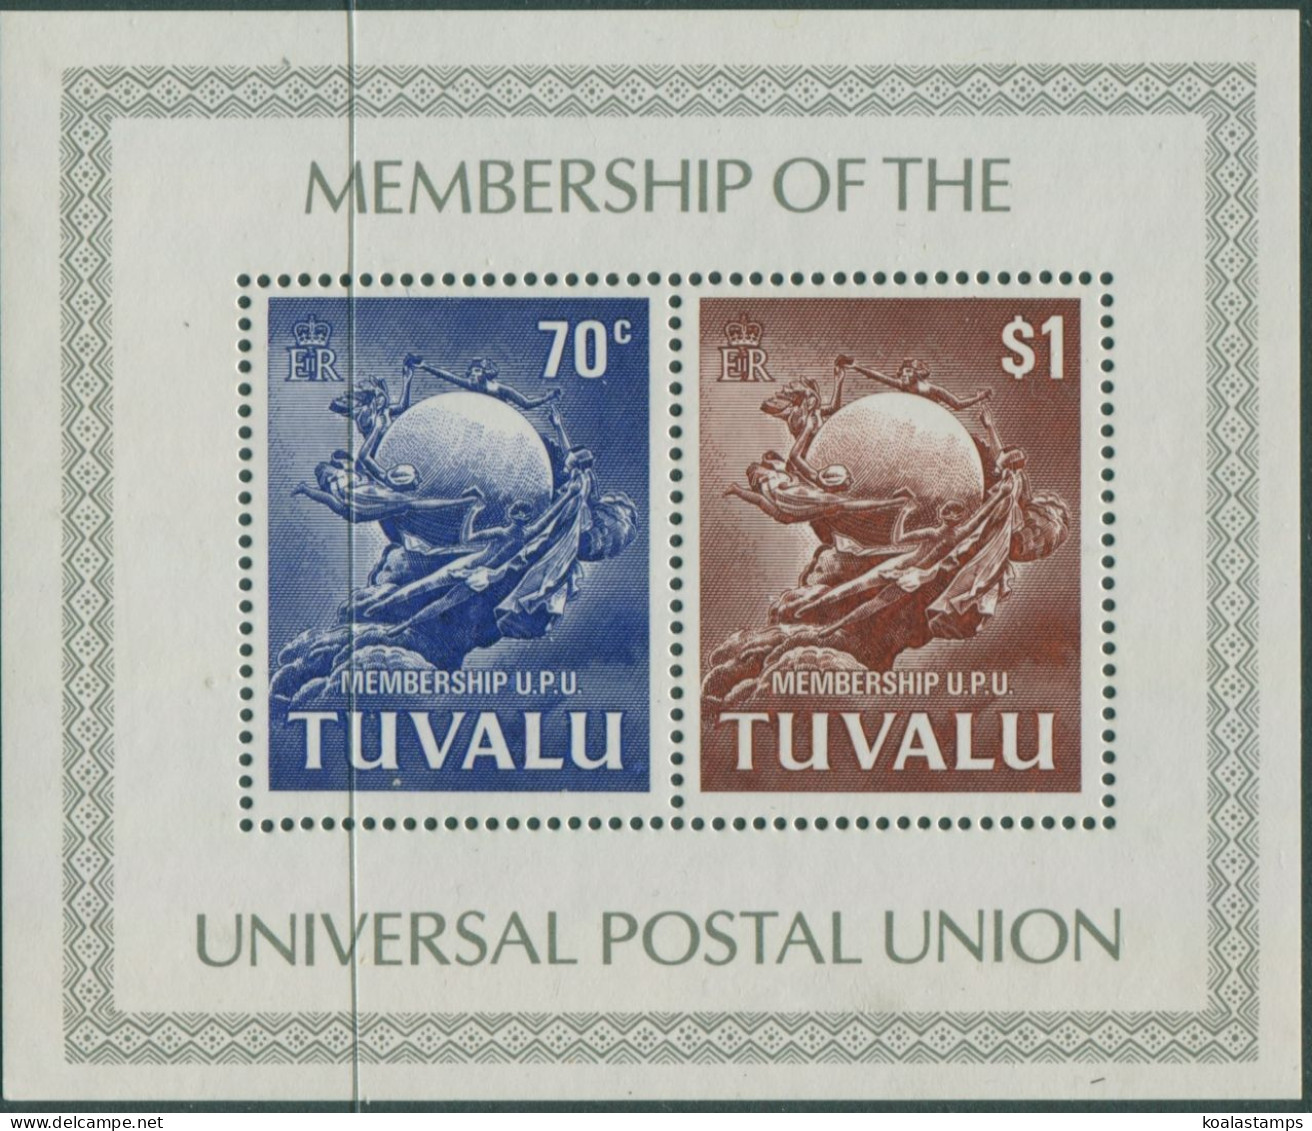 Tuvalu 1981 SG179 UPU Membership MS MNH - Tuvalu